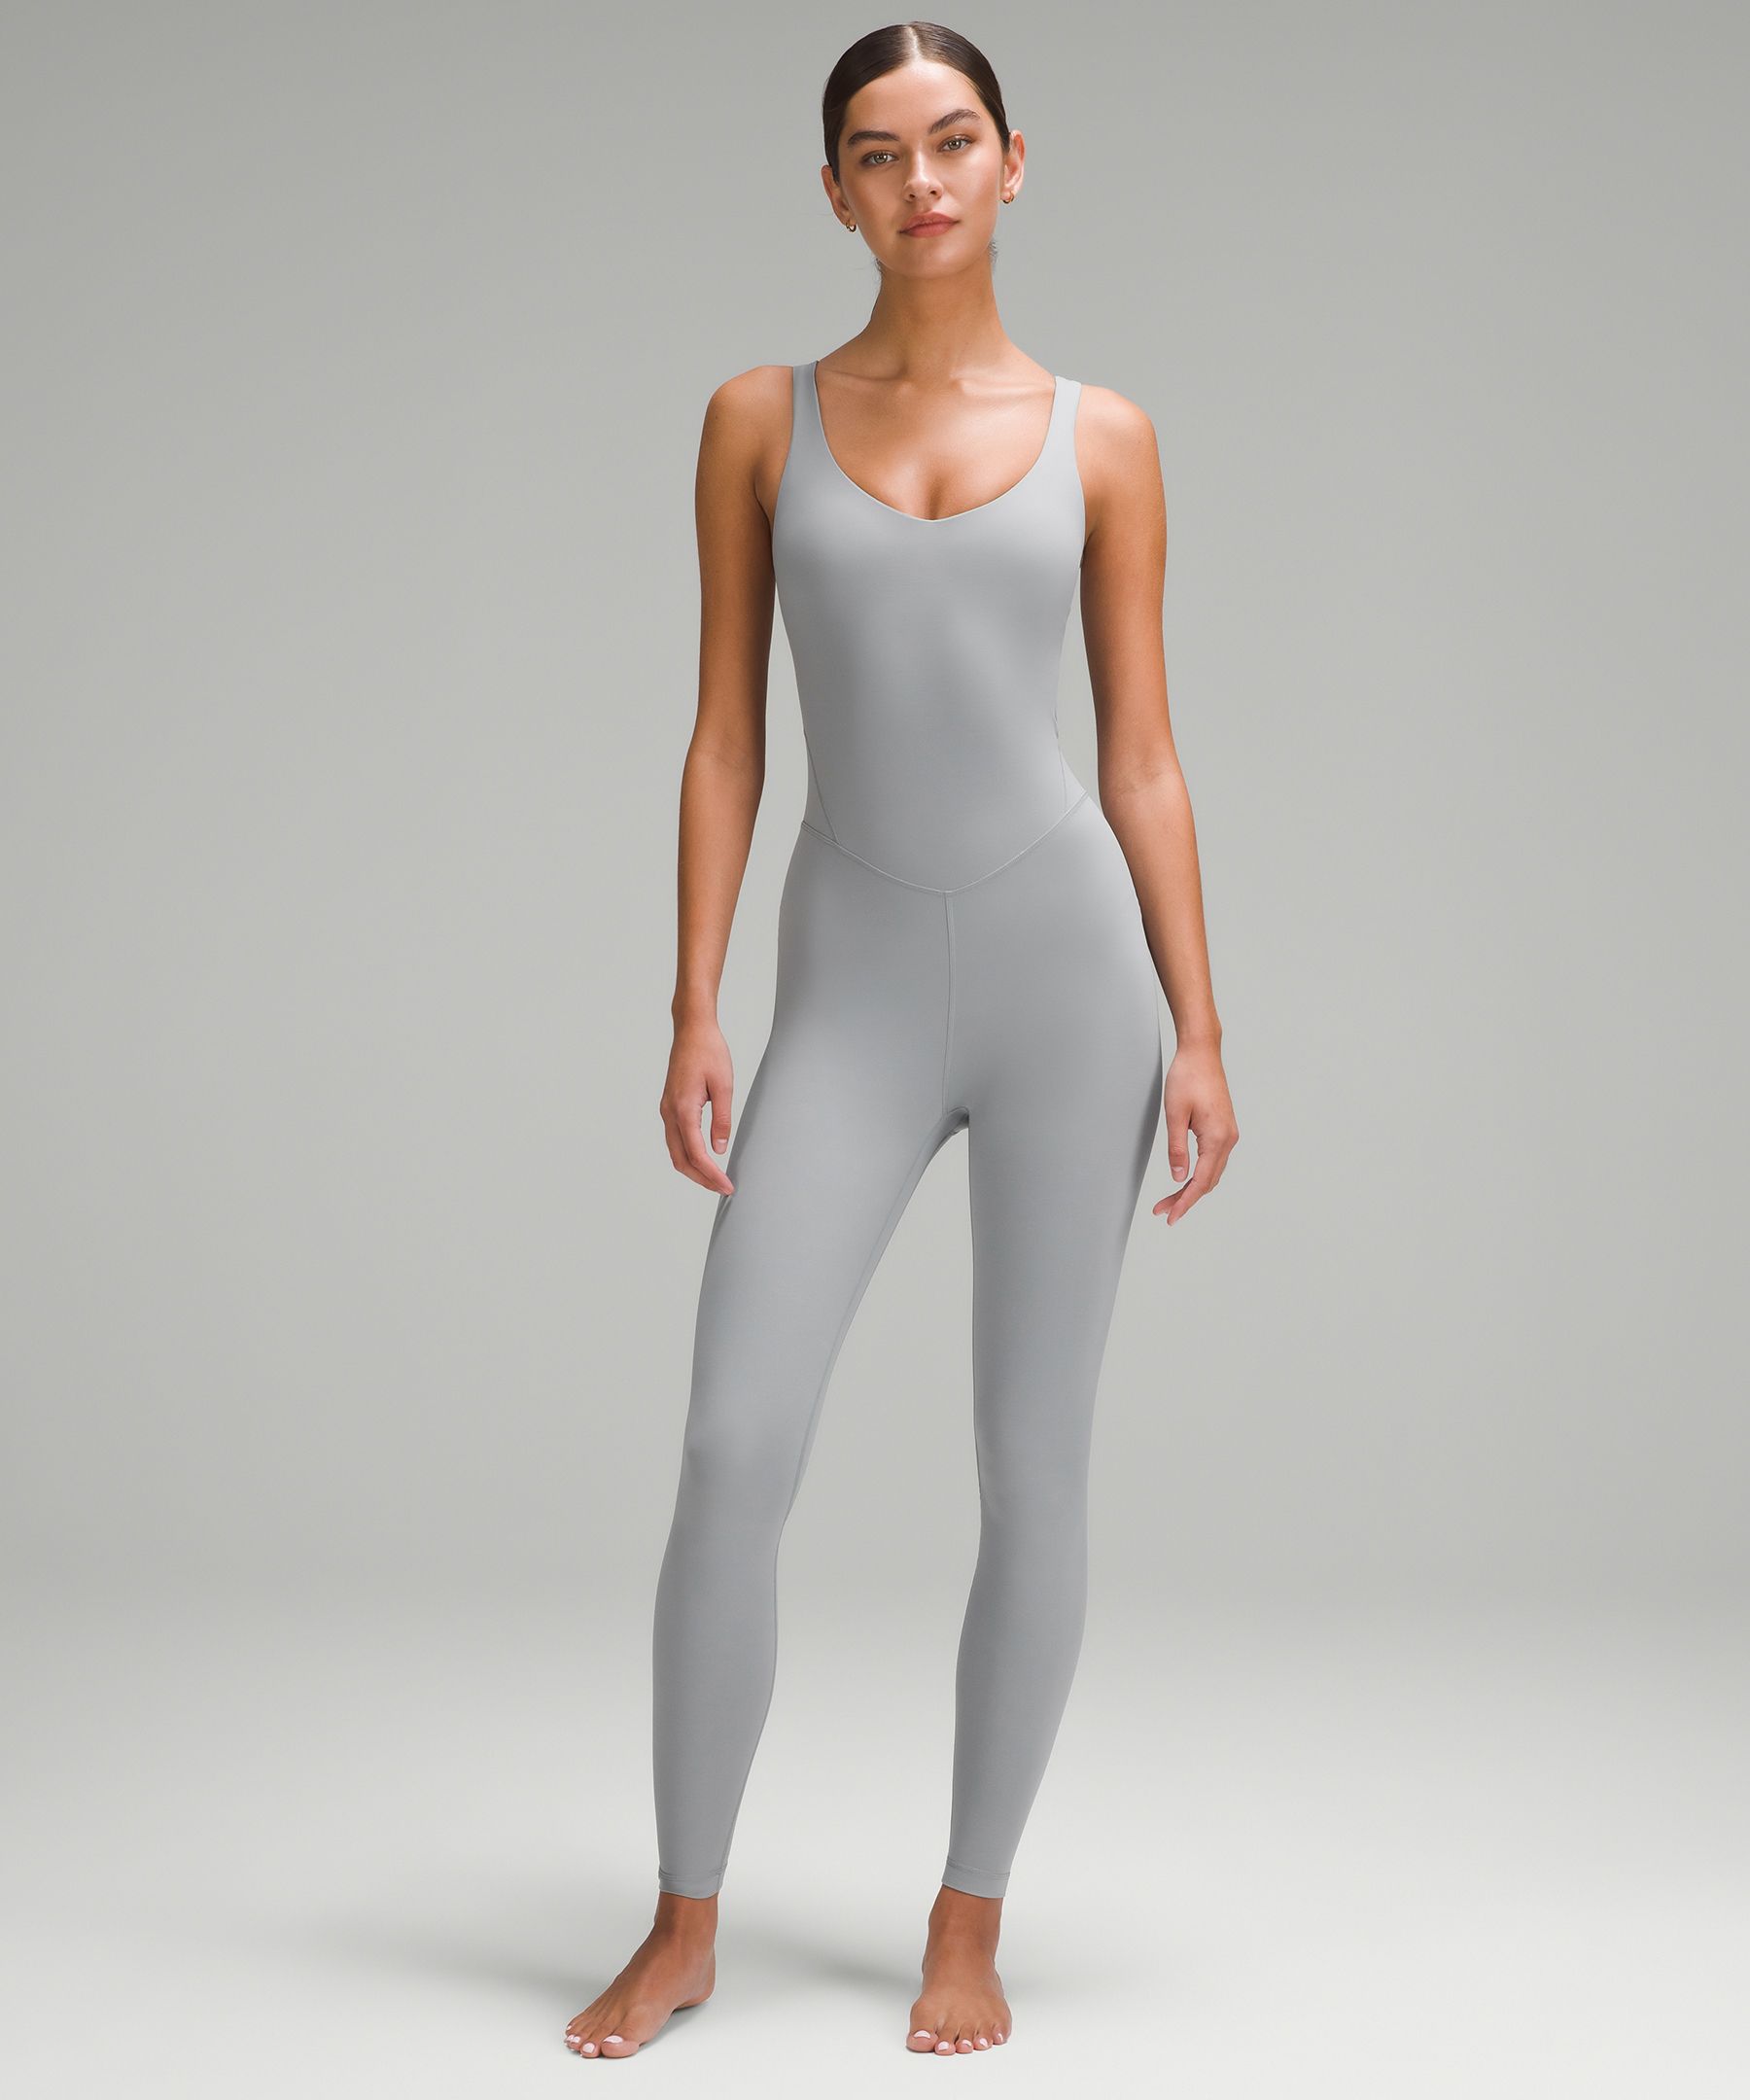 BRAND NEW Lululemon Align™ Bodysuit 6, Women's Fashion